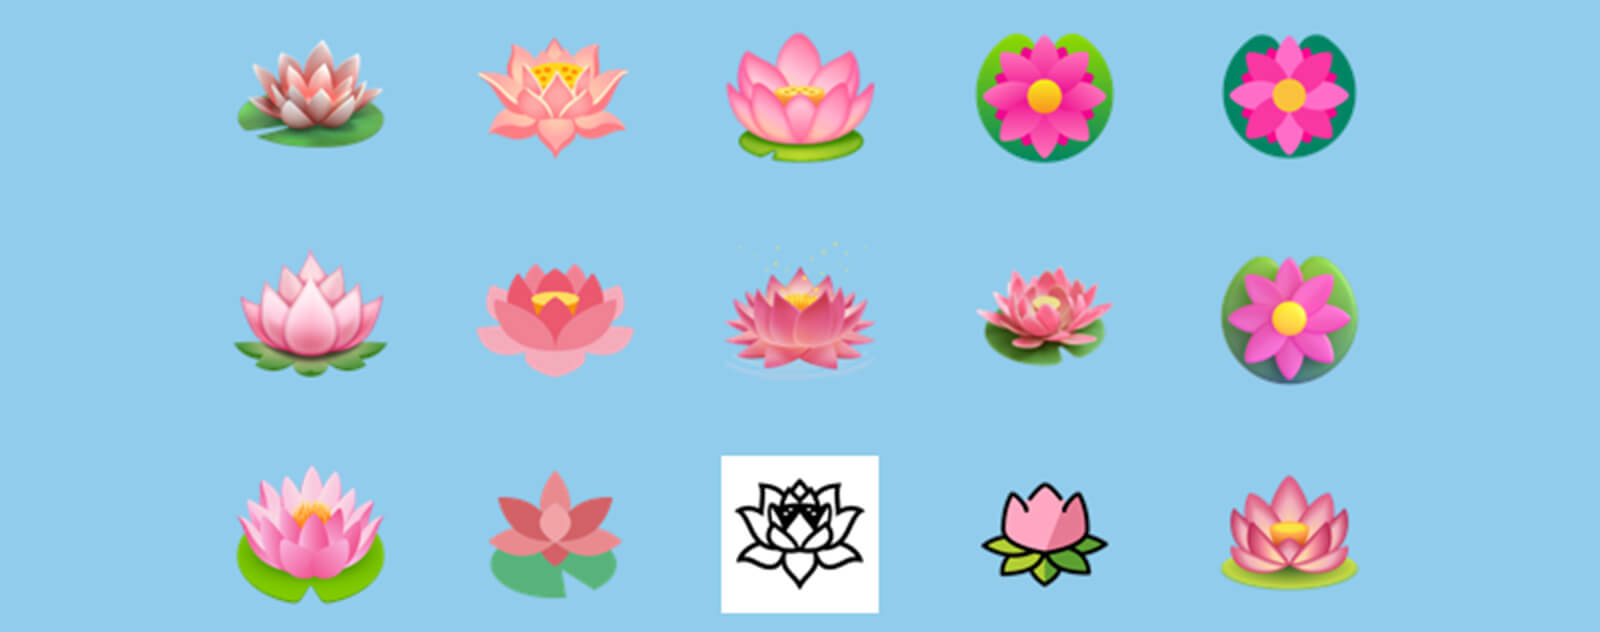 emoji-fleur-de-lotus-image